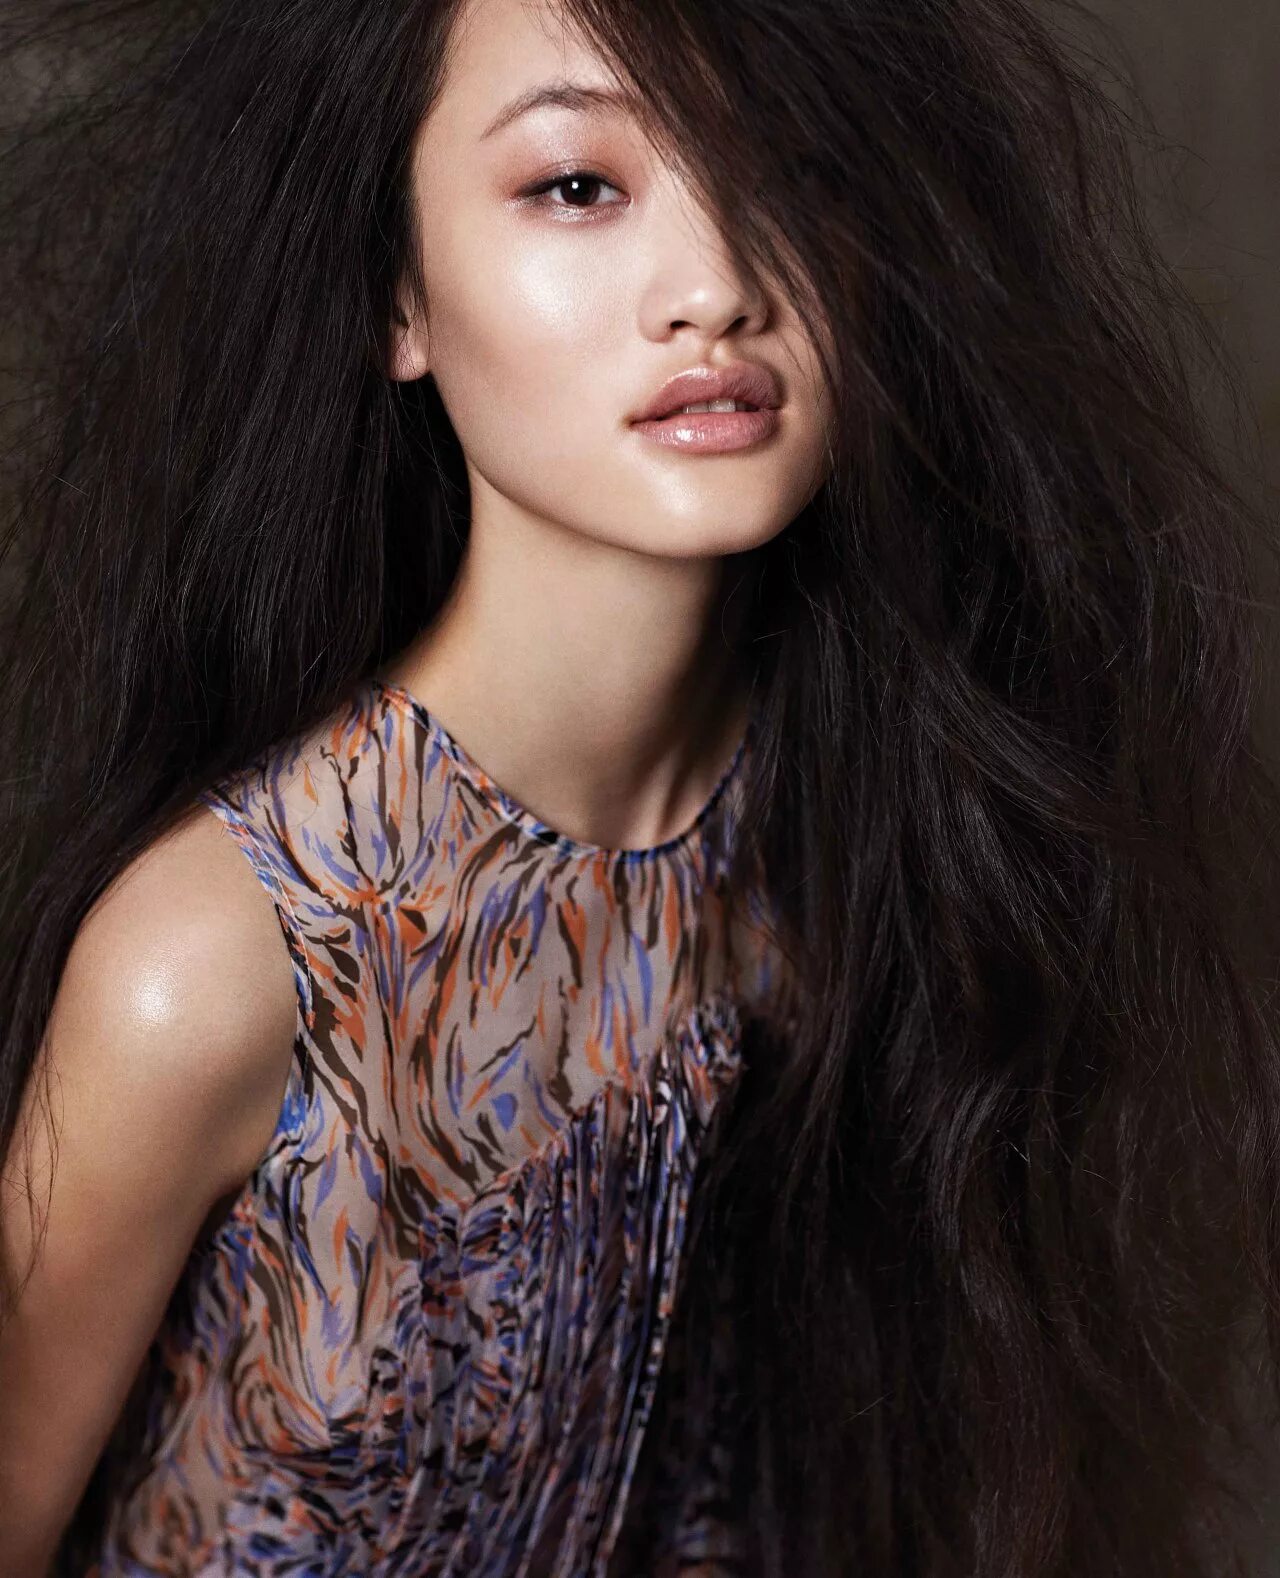 Лю Вэнь китайская модель. Азиатки модели. Азиатские женщины. Самые красивые азиатские девушки метисы.